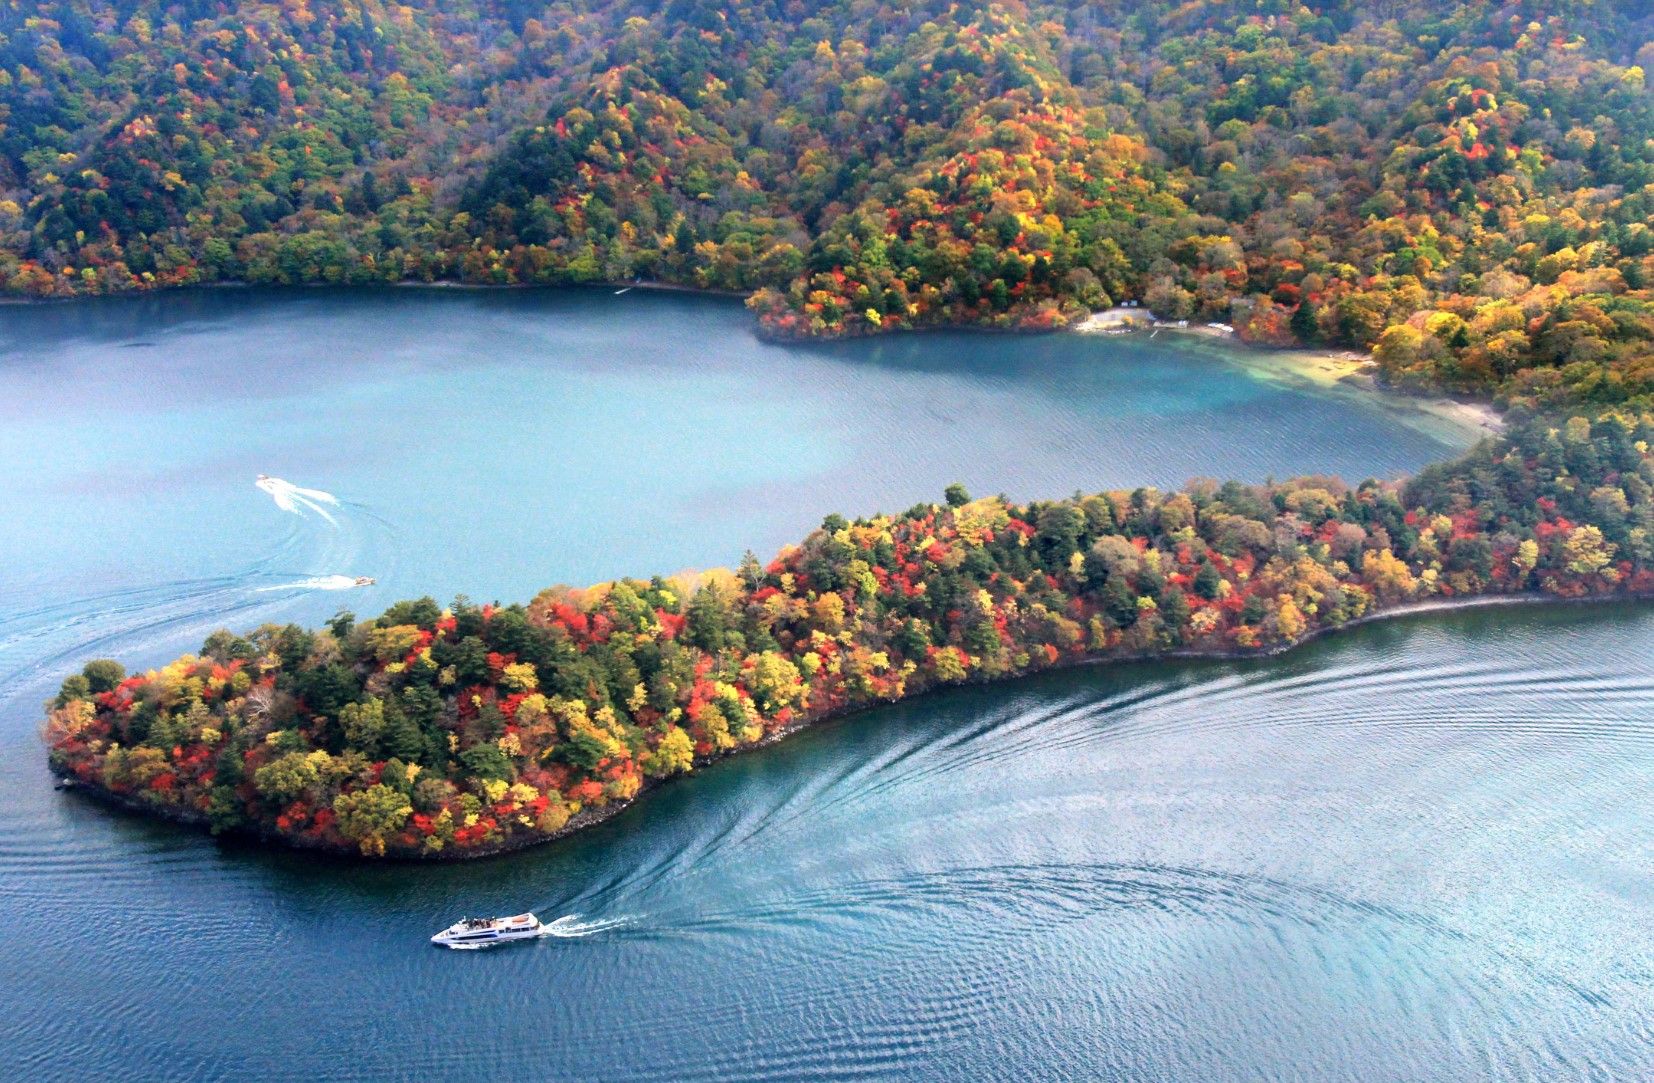 Lake Chuzenji Surrounded in Autumn Foliage